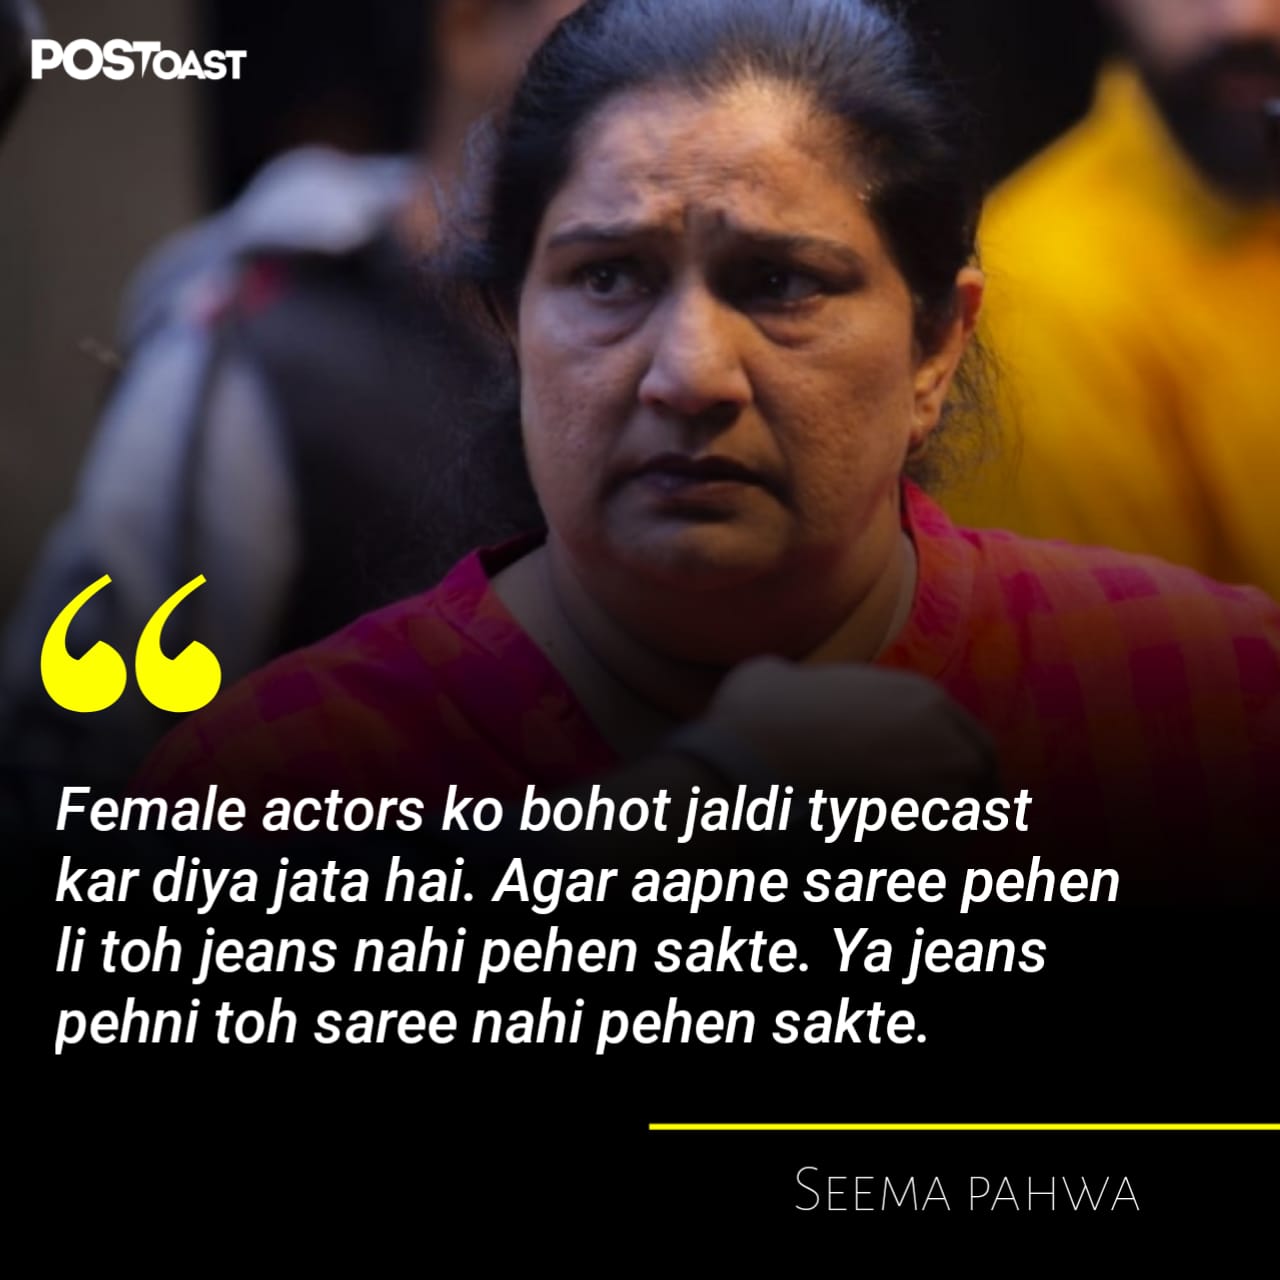 Seema Pahwa Quote